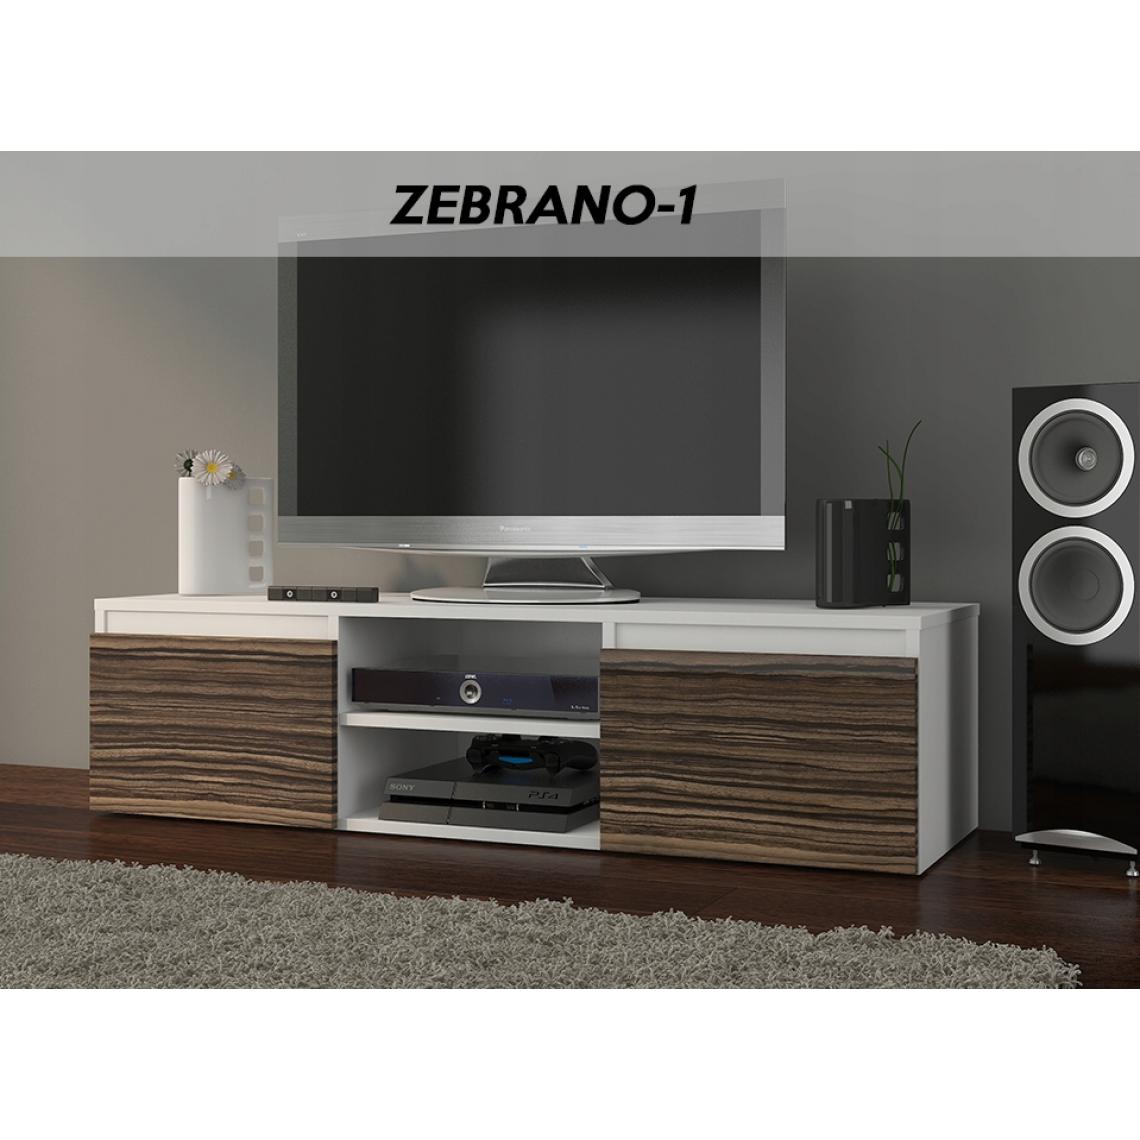 Hucoco - GOREME W1 - Meuble bas TV contemporain salon/séjour 120x40x36 - 2 niches 2 portes - Rangement moderne matériel audio/video/gaming - Blanc/Zebrano - Meubles TV, Hi-Fi